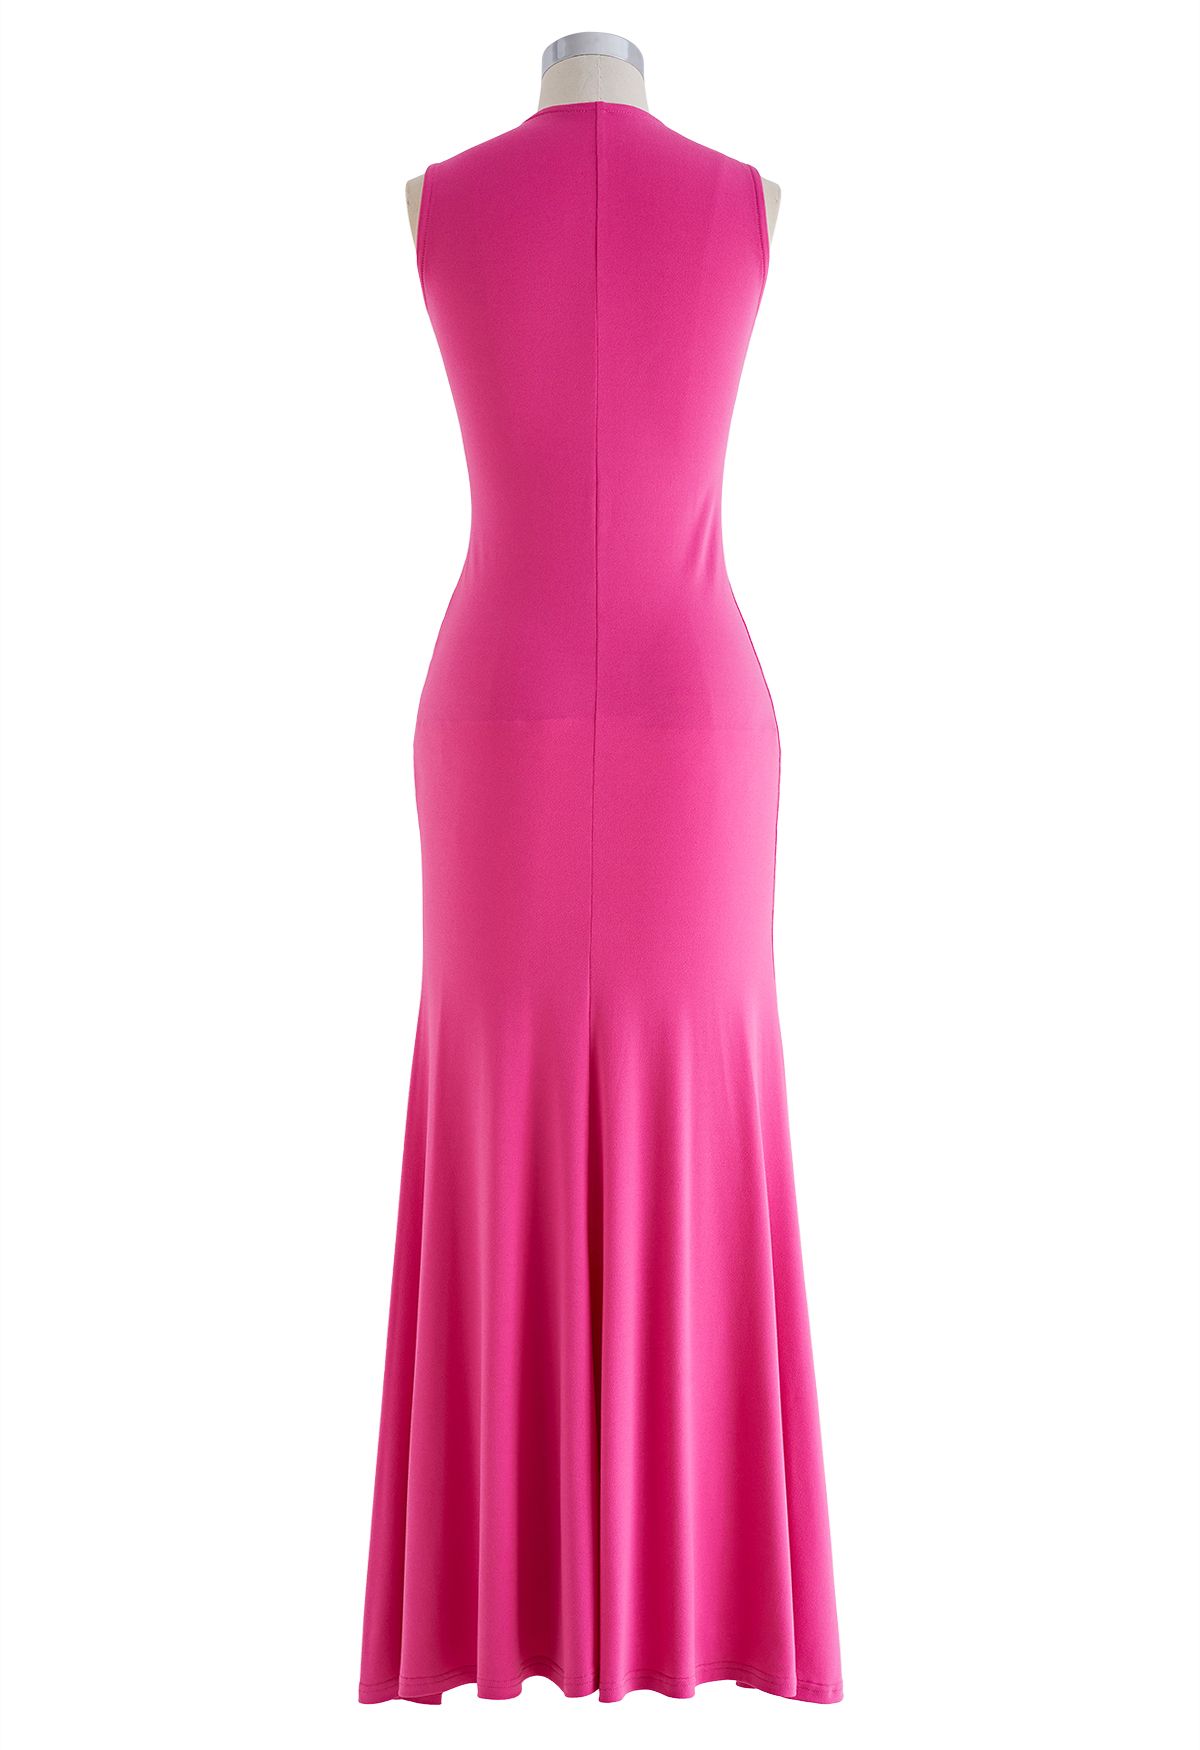 Ärmelloses Kleid mit V-Ausschnitt, Kordelzug und Rüschen in Hot Pink